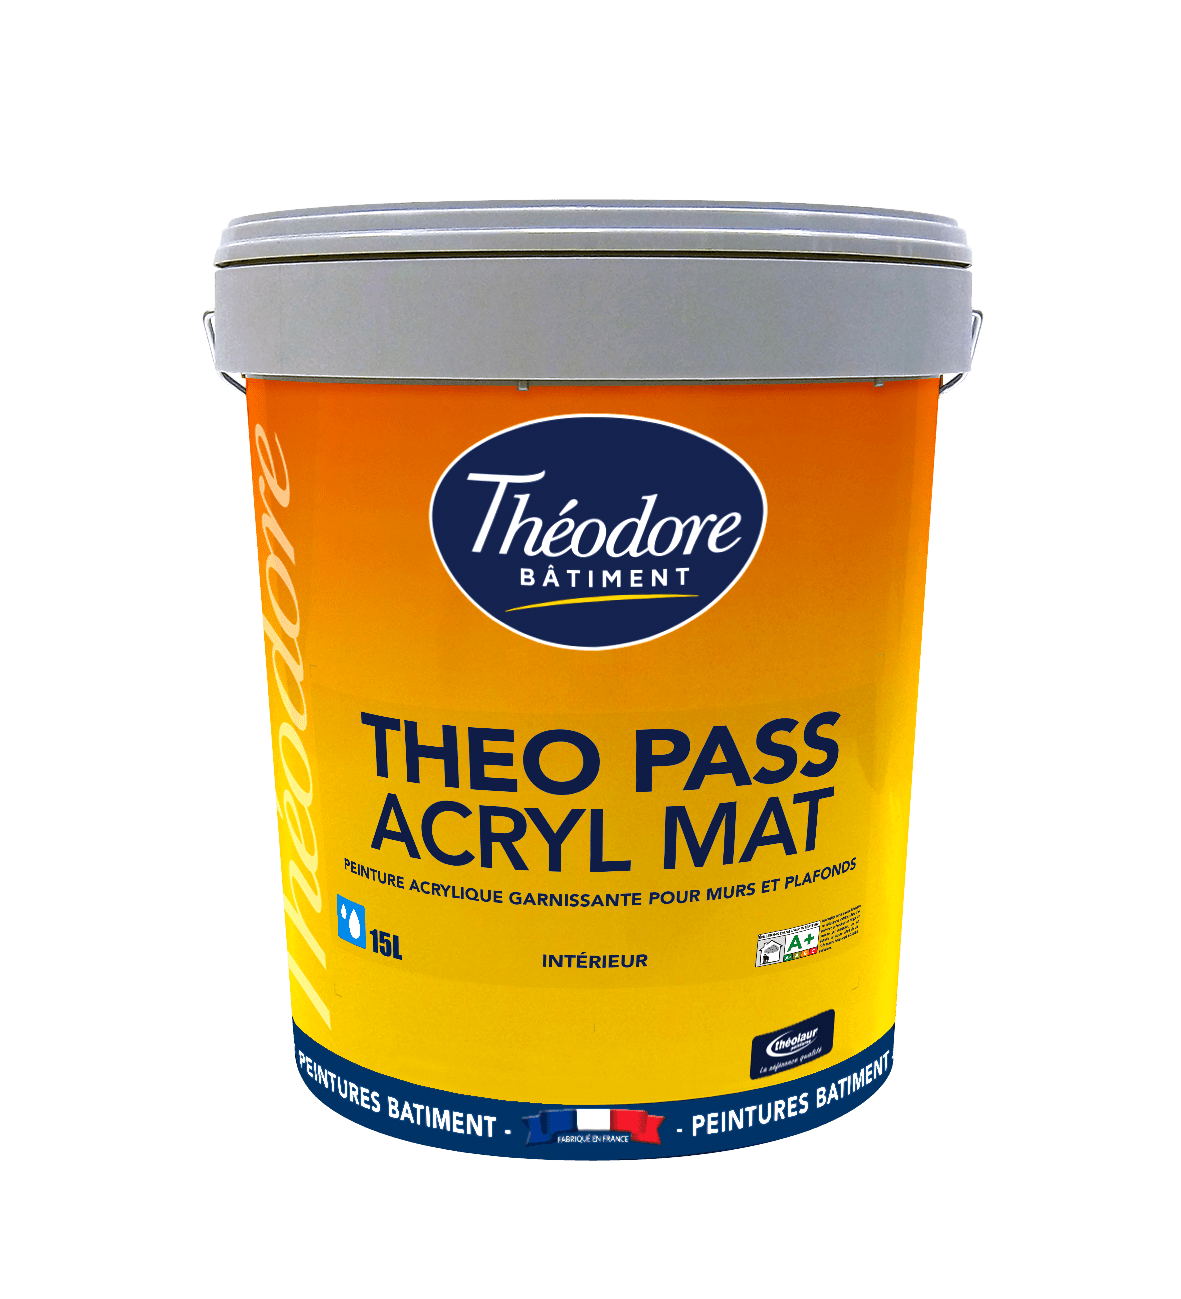 Theo pass acryl mat 15l 0620